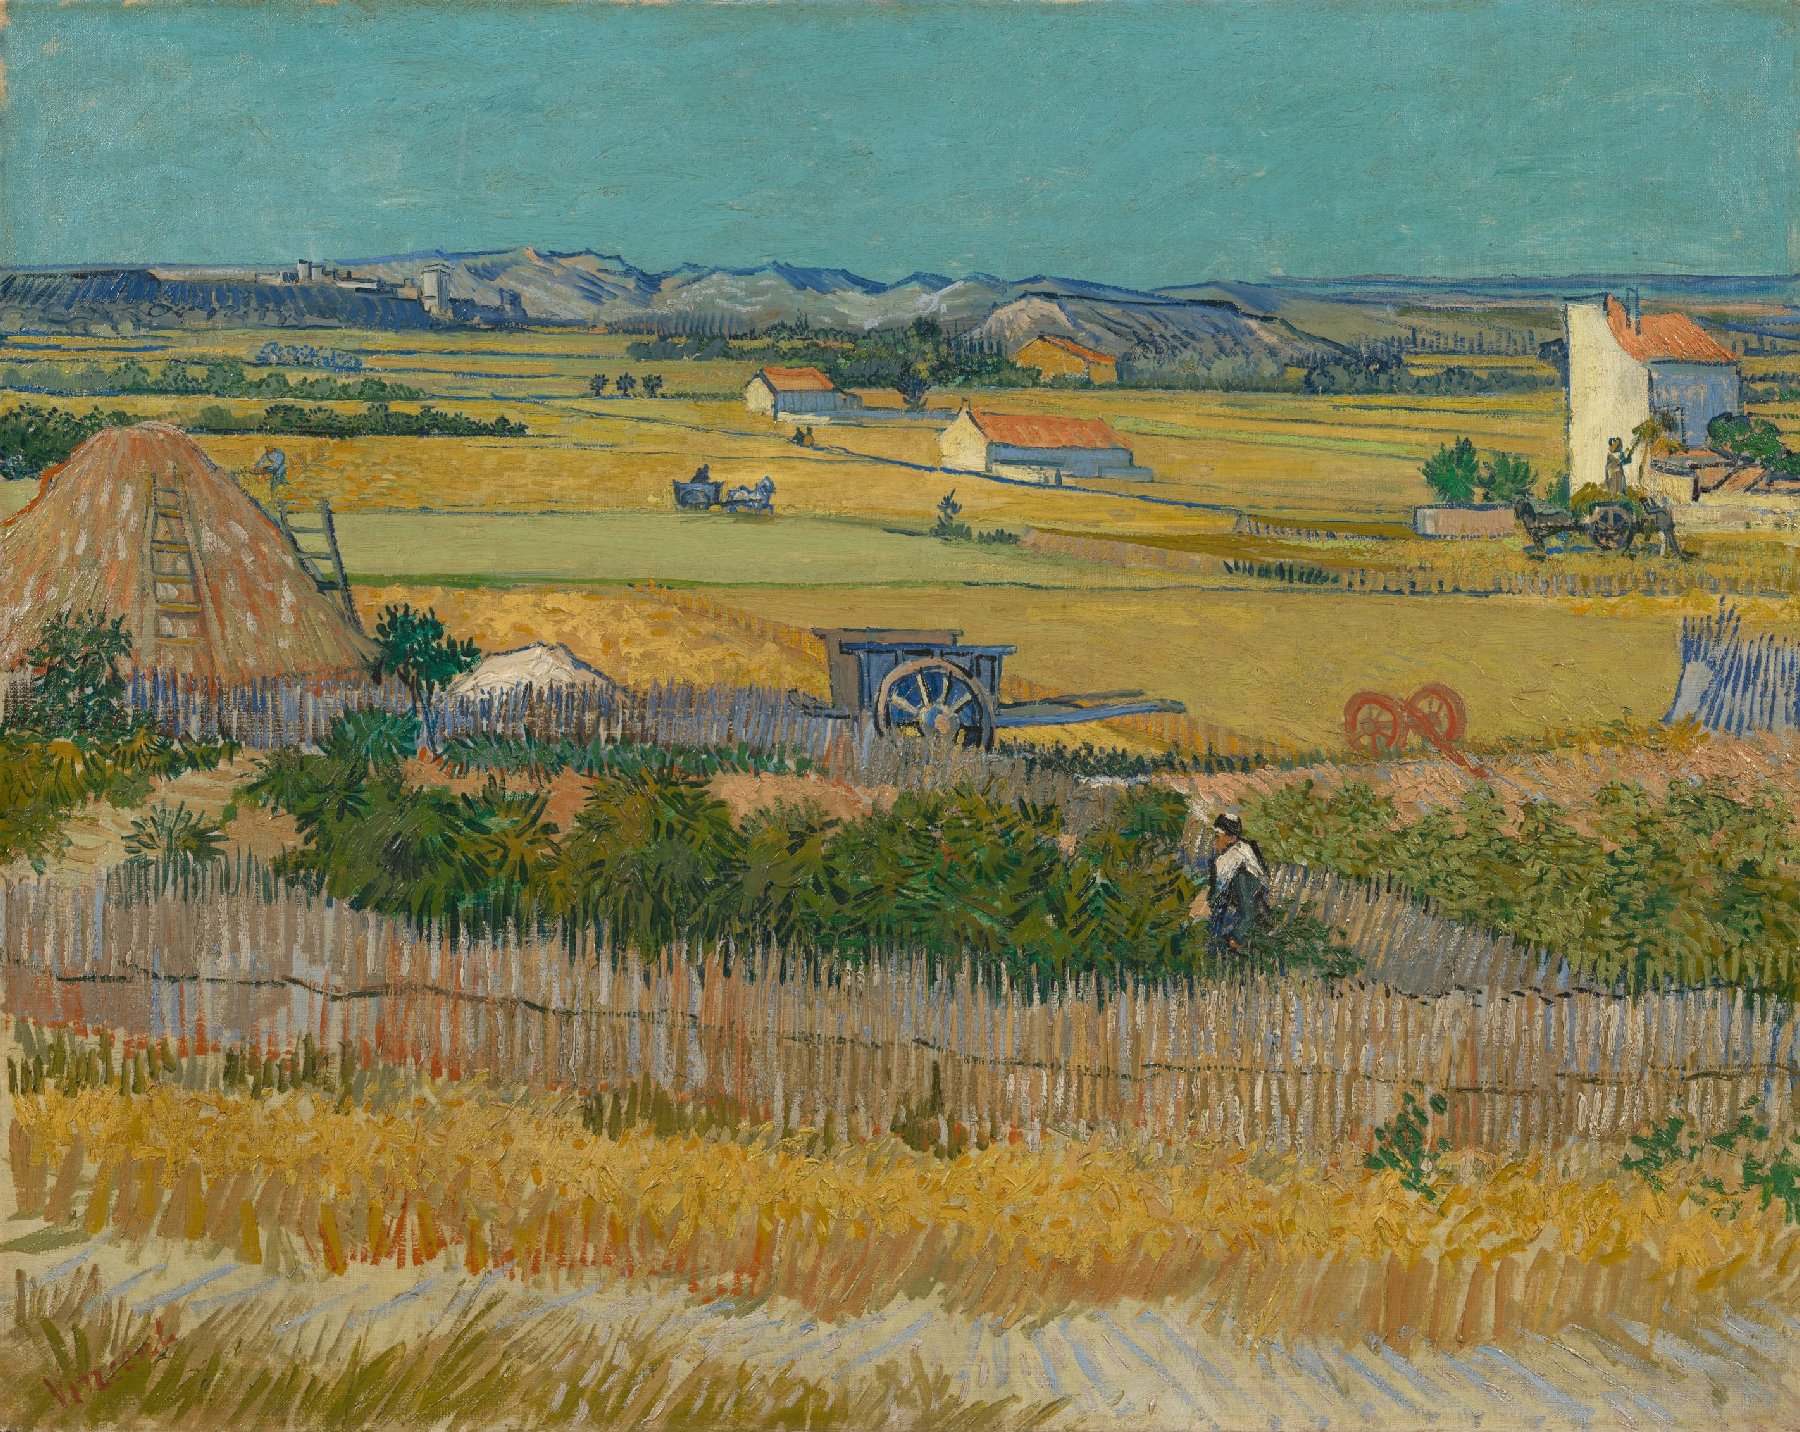 収穫 by フィンセント・ ファン・ゴッホ - 1888年６月 - 73.4 cm x 91.8 cm 